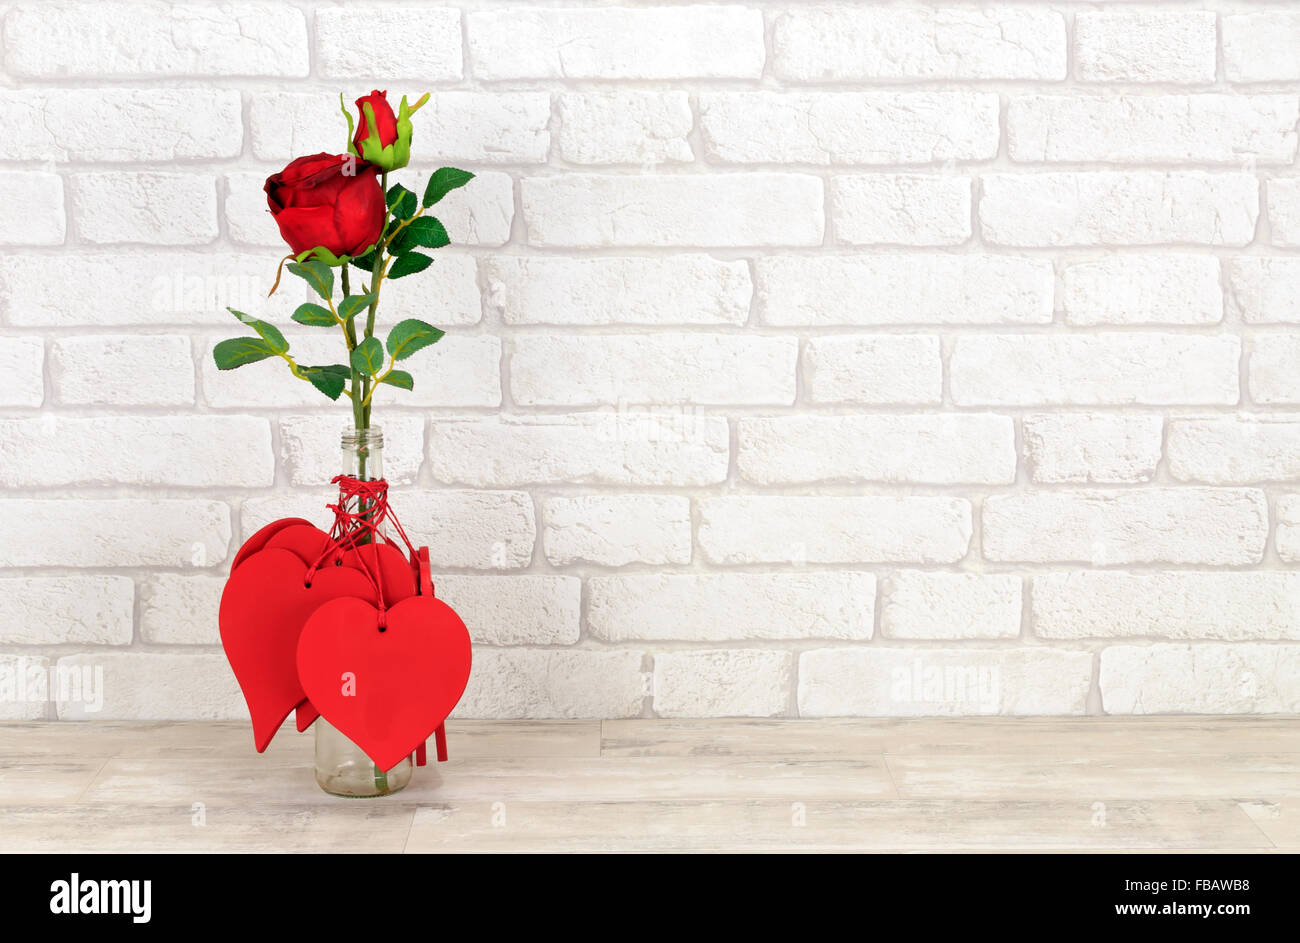 Valentin coeurs et rose rouge dans le flacon en verre placé sur une étagère en bois miteux avec white brick wall background Banque D'Images